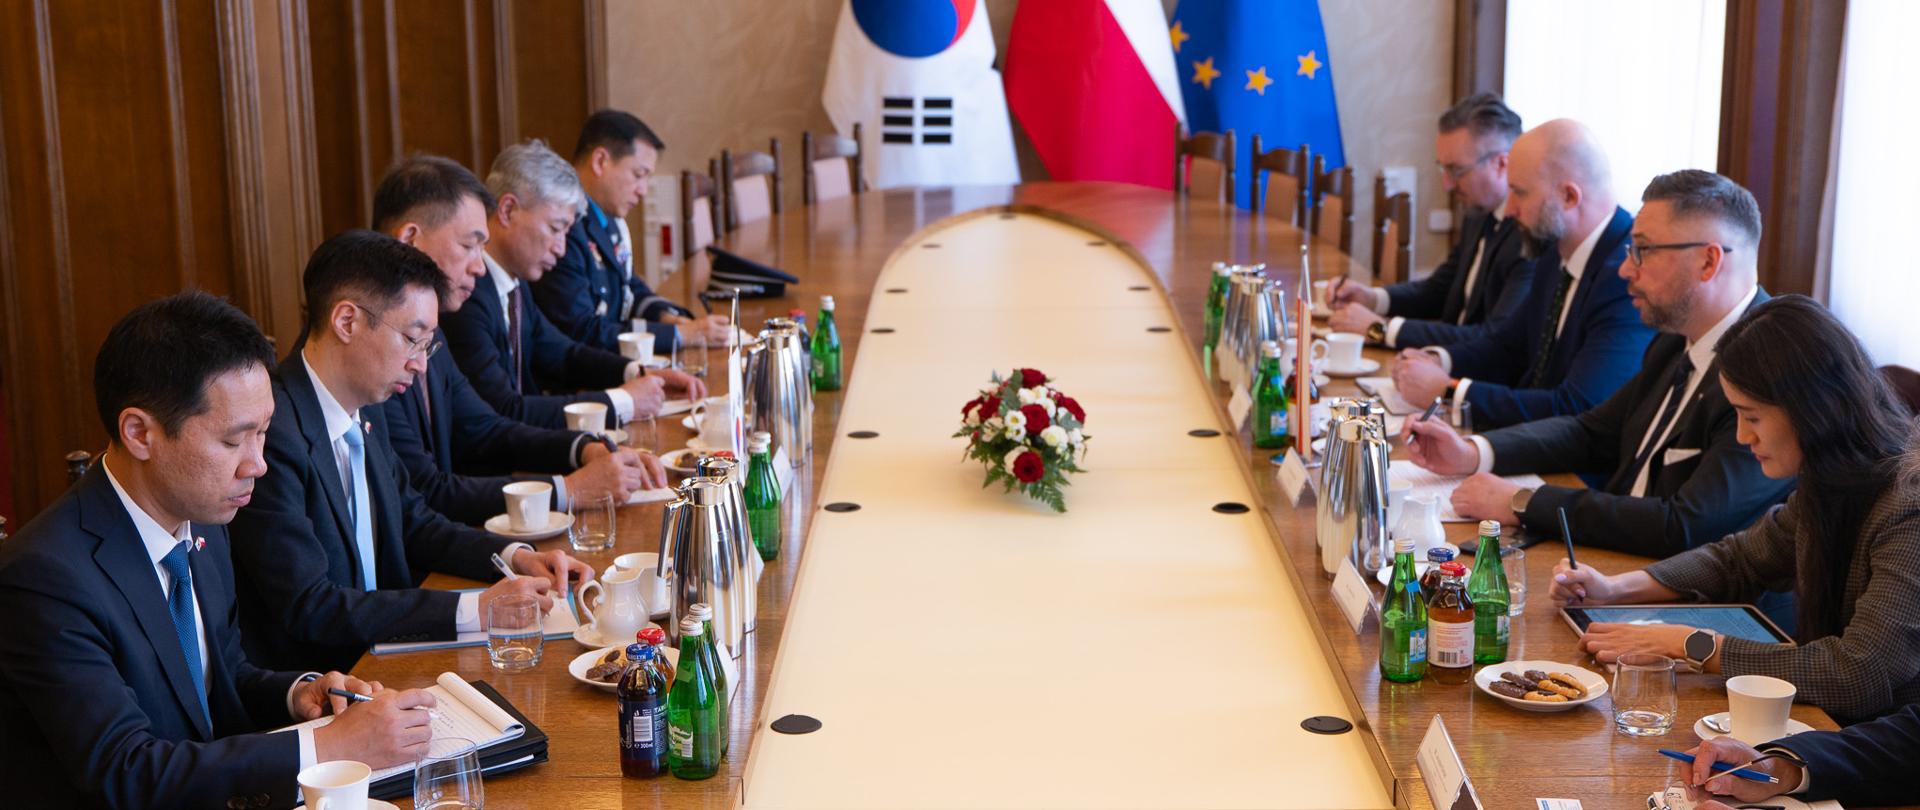 Przedstawiciele delegacji polskiej i koreańskiej siedzą wokół okrągłego stołu. Na stole kwiaty, dzbanki, butelki, szklanki. W tle flagi - południowokoreańska, polska i UE.